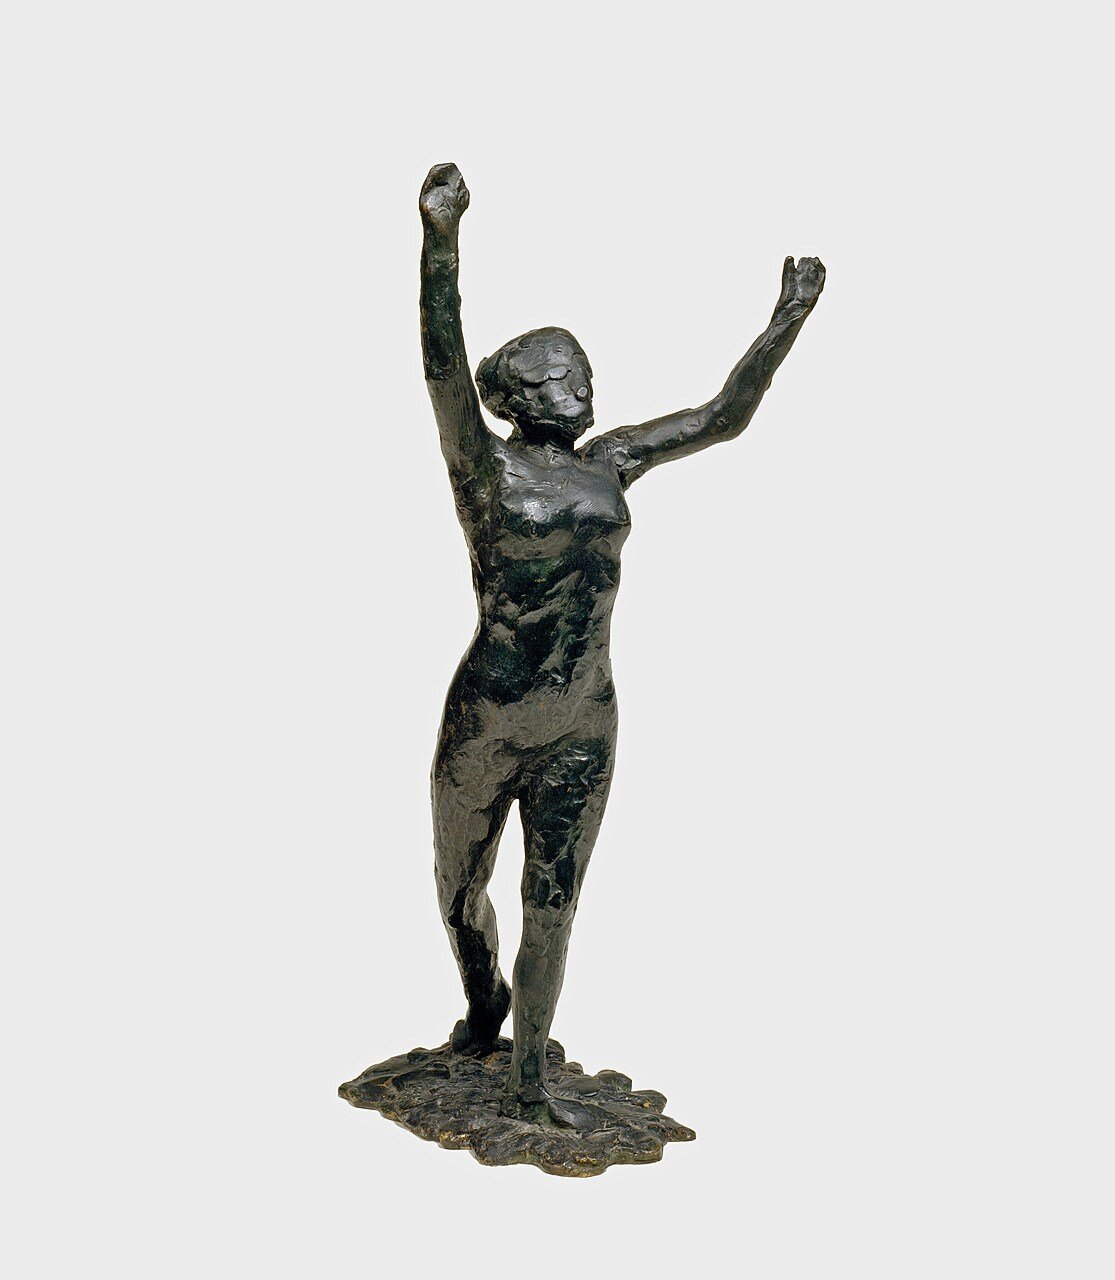 Dancer Moving Forward, Arms Raised (Danseuse s’avançant, les bras levés)